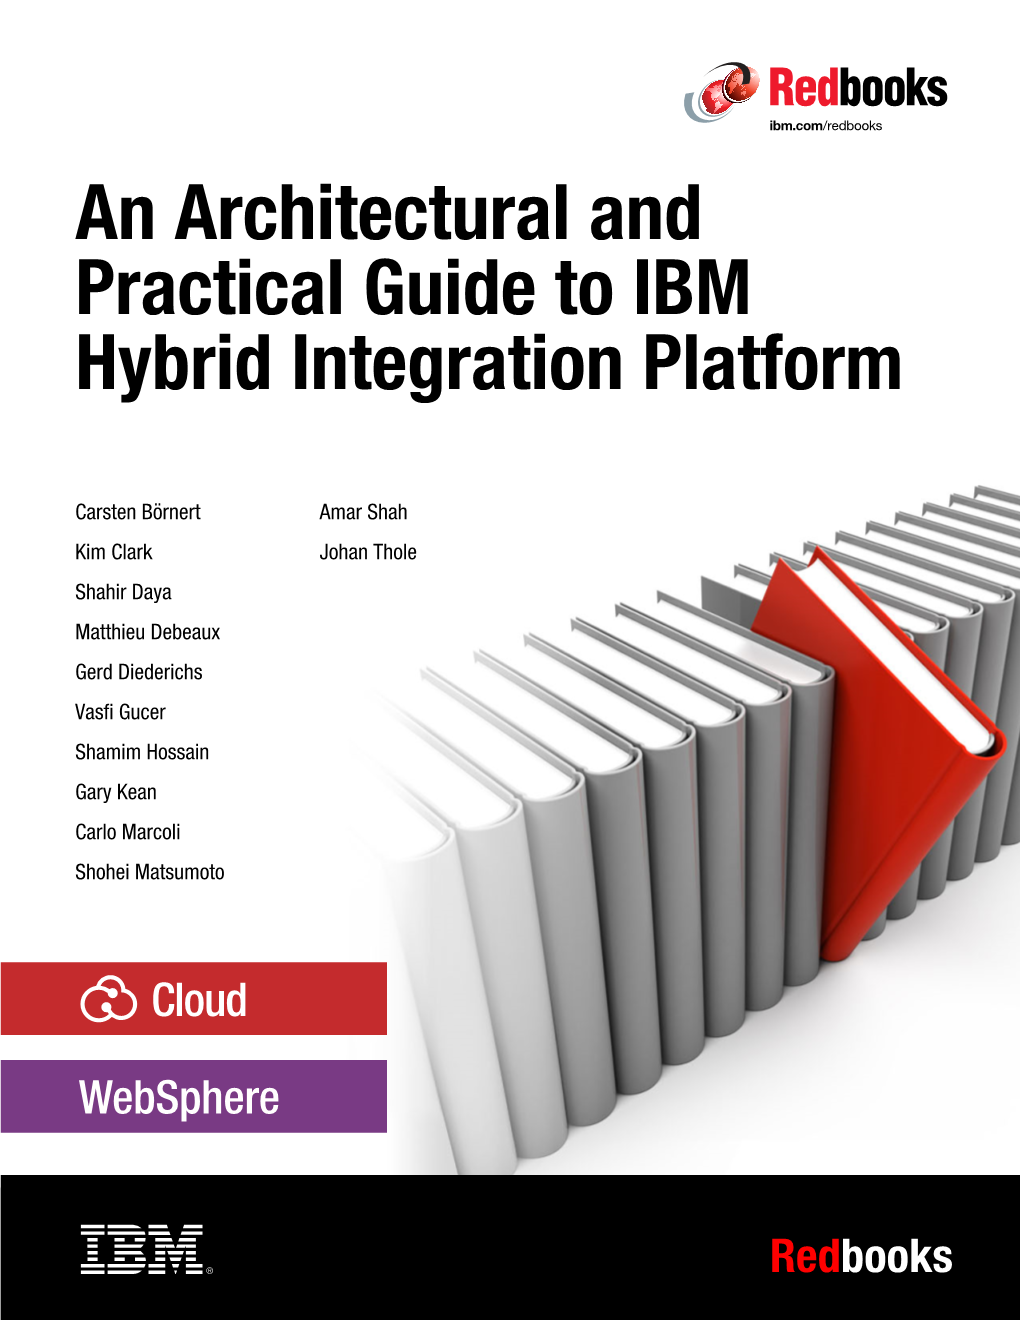 A Practical Guide for IBM Hybrid Integration Platform